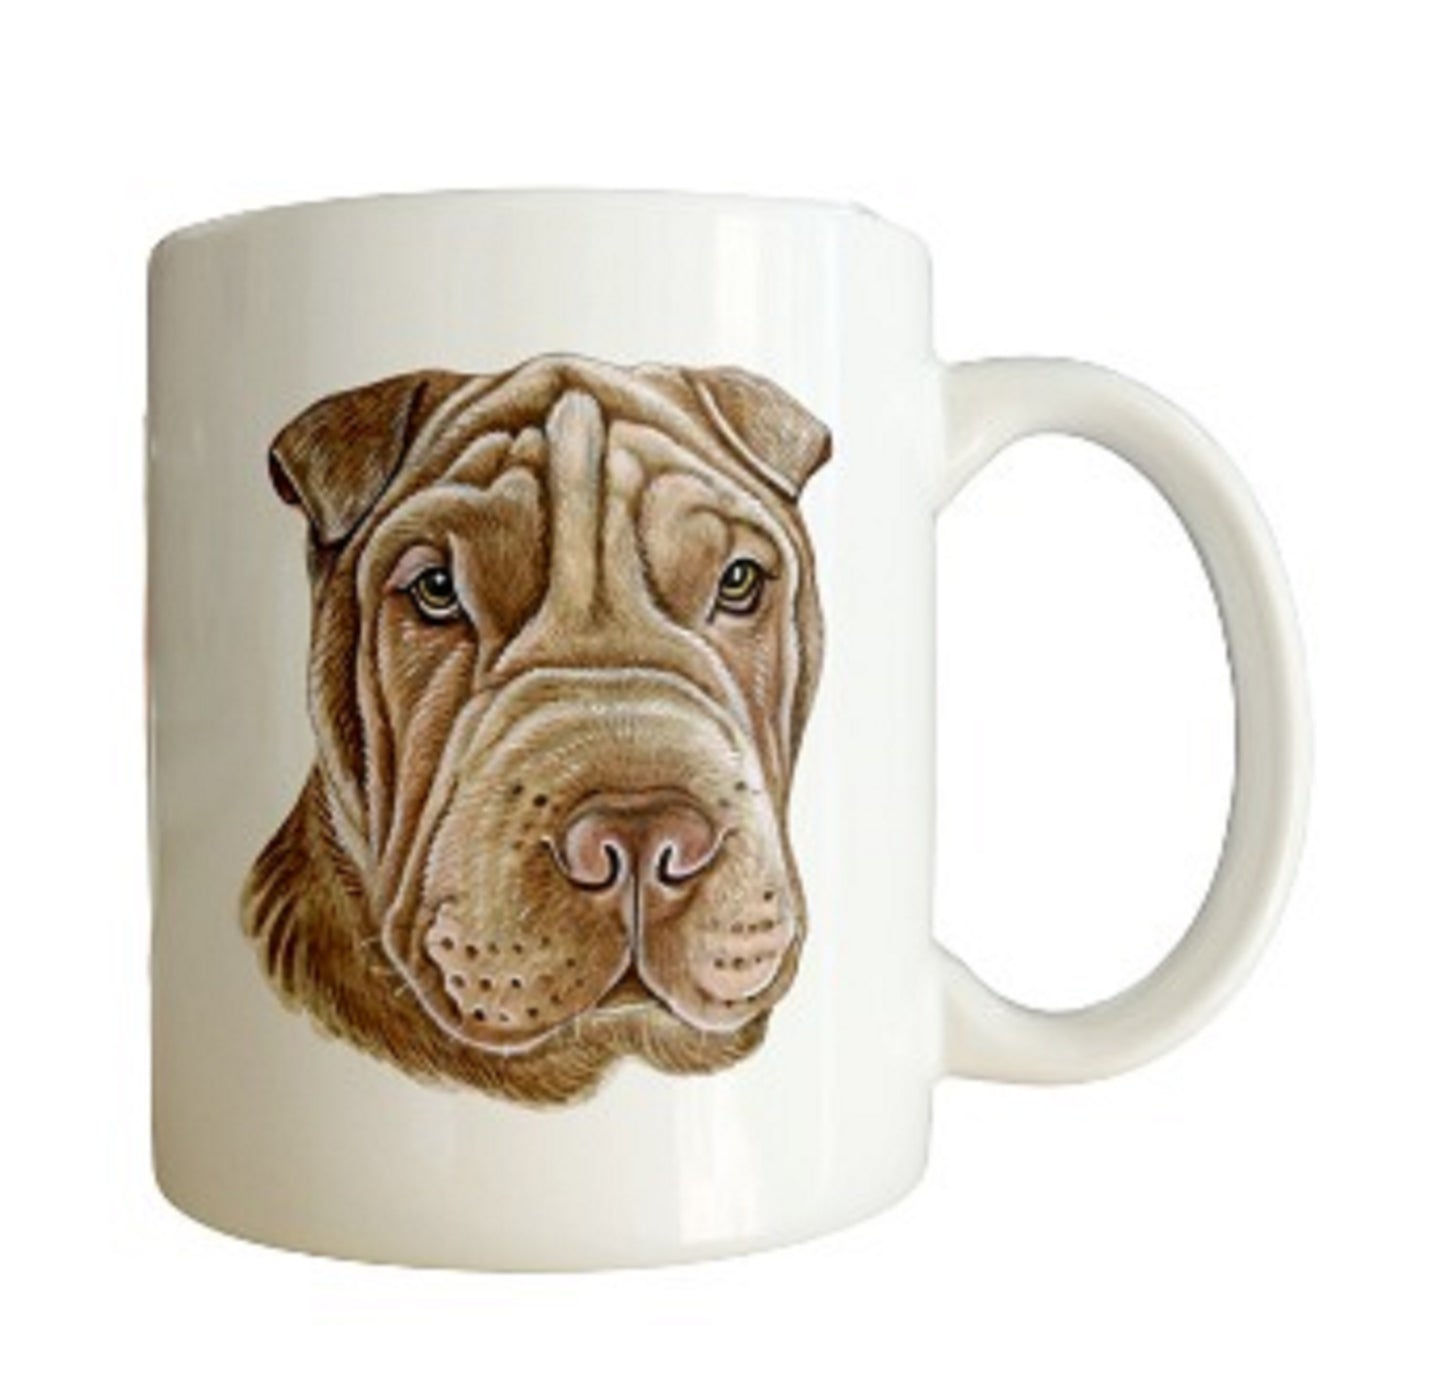  Shar Pei Dog Head Mug by Free Spirit Accessories sold by Free Spirit Accessories